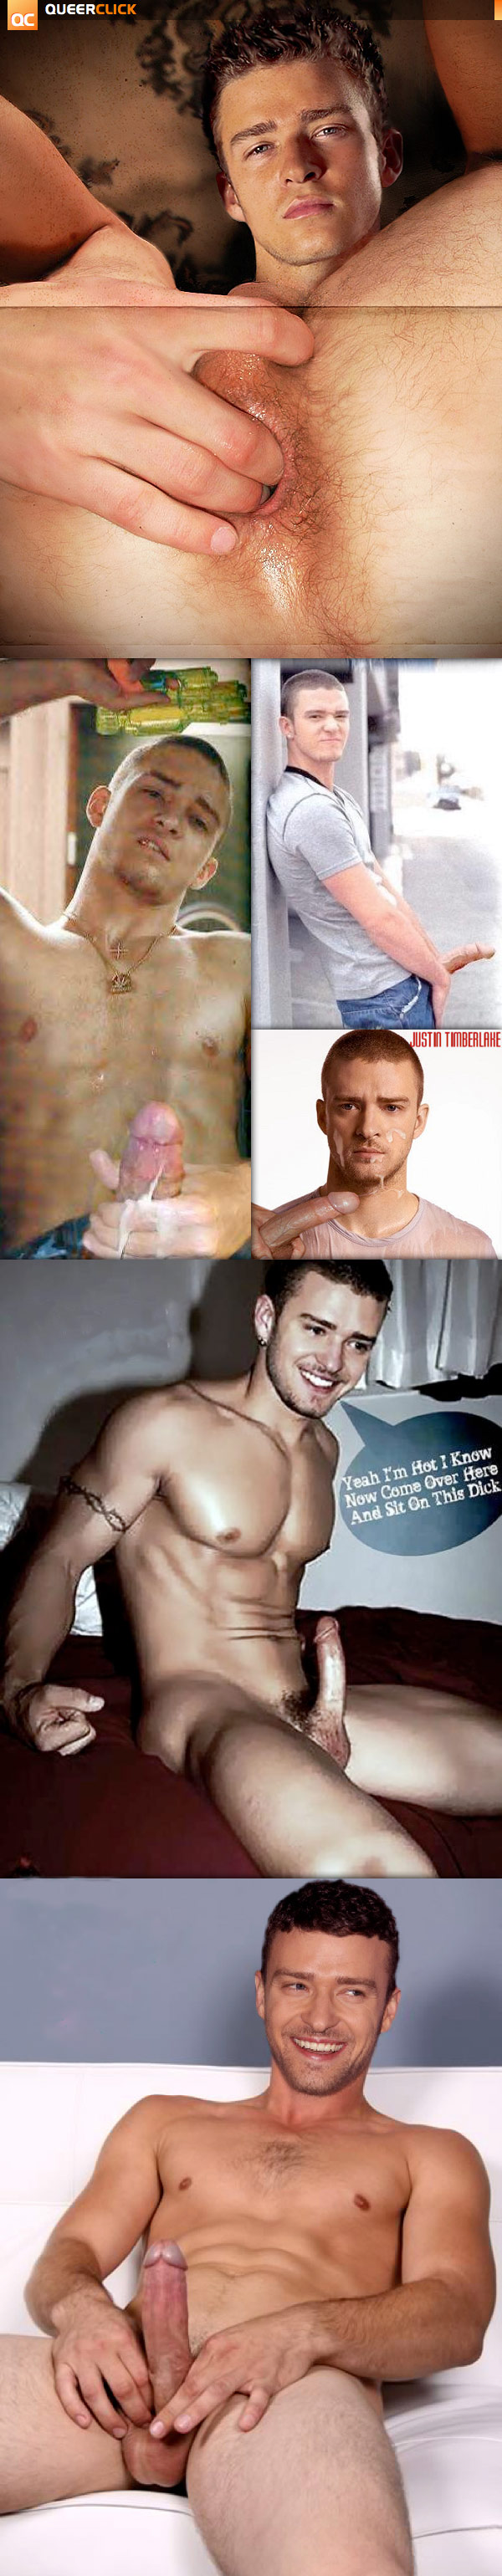 Justin Timberlake Exposed! We Need Pix!